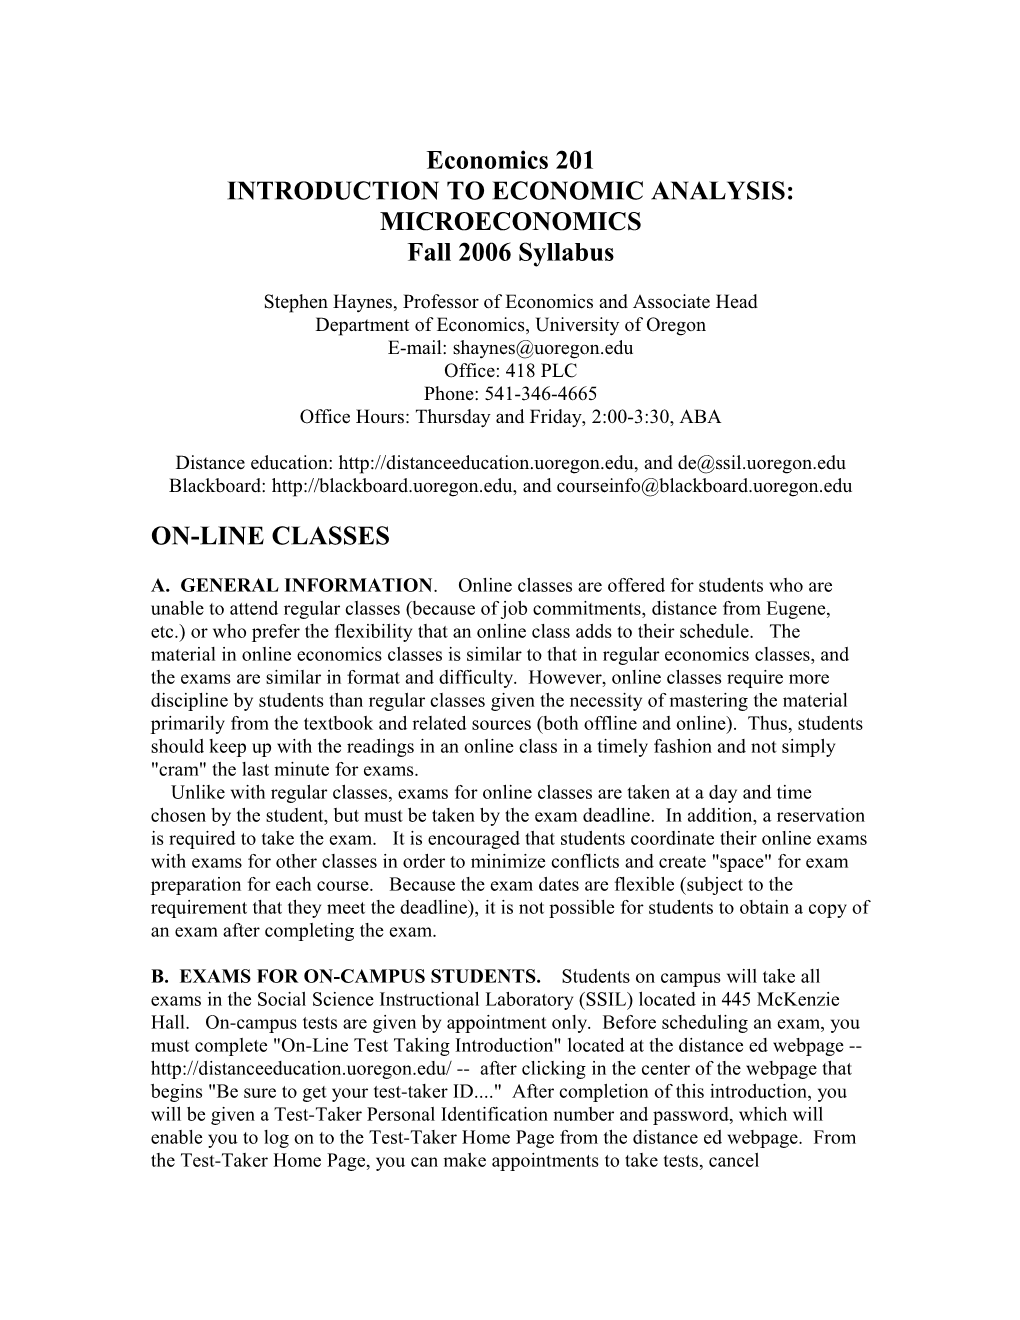 Introduction to Economic Analysis: Microeconomics